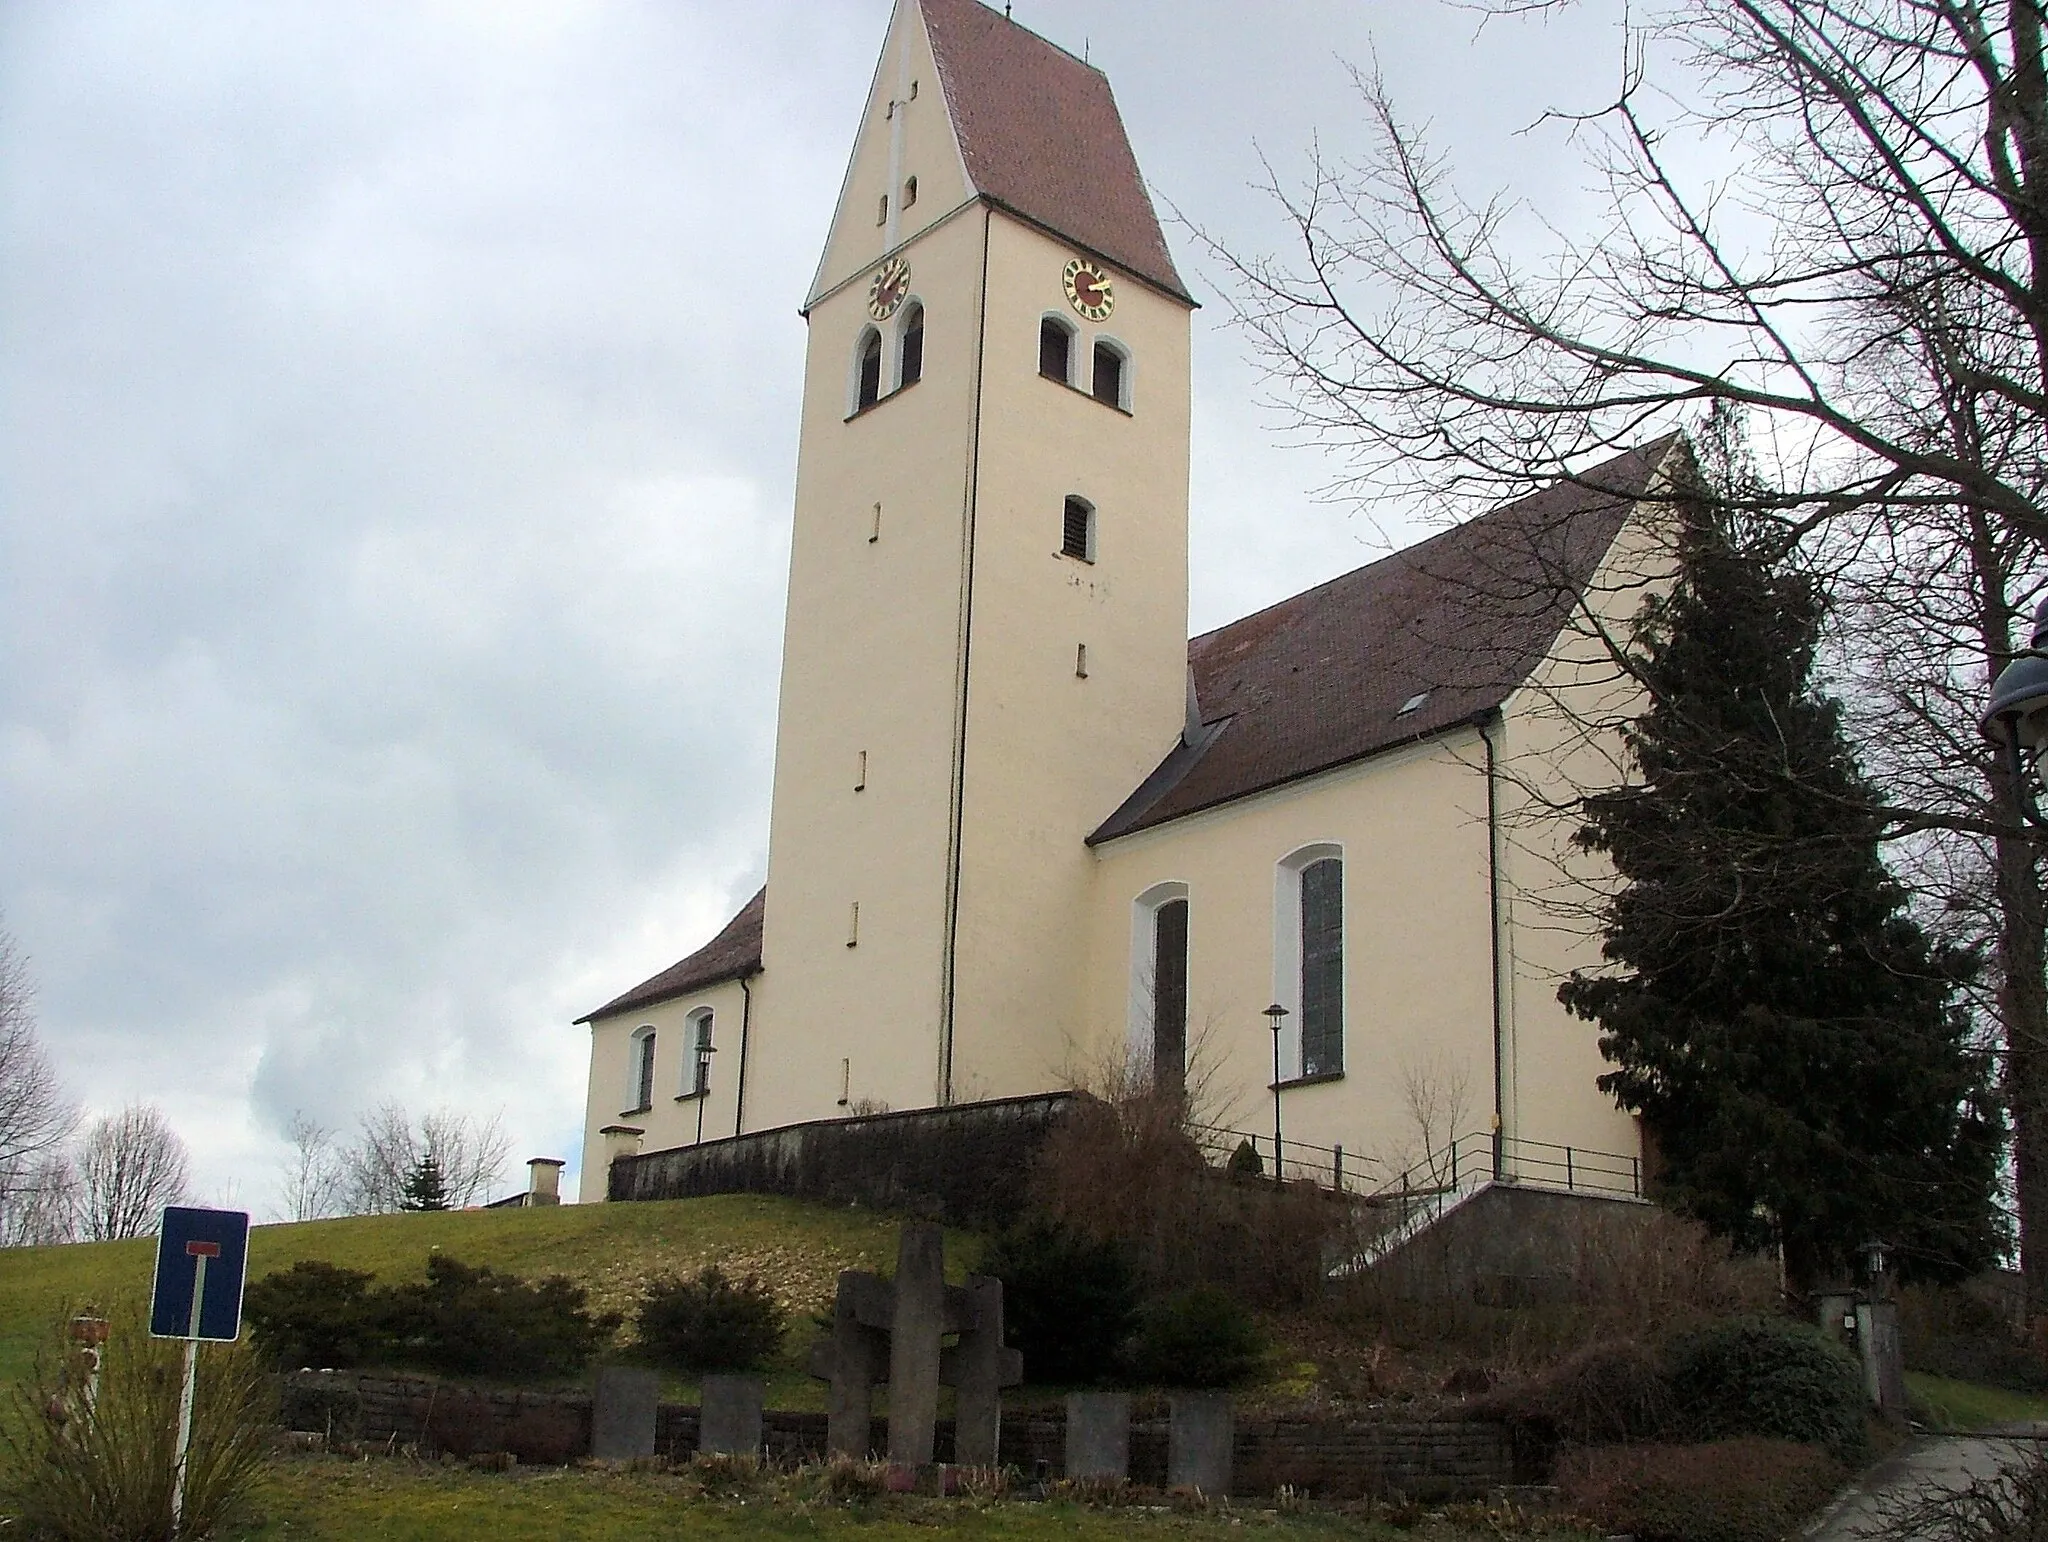 Photo showing: Gebrazhofen